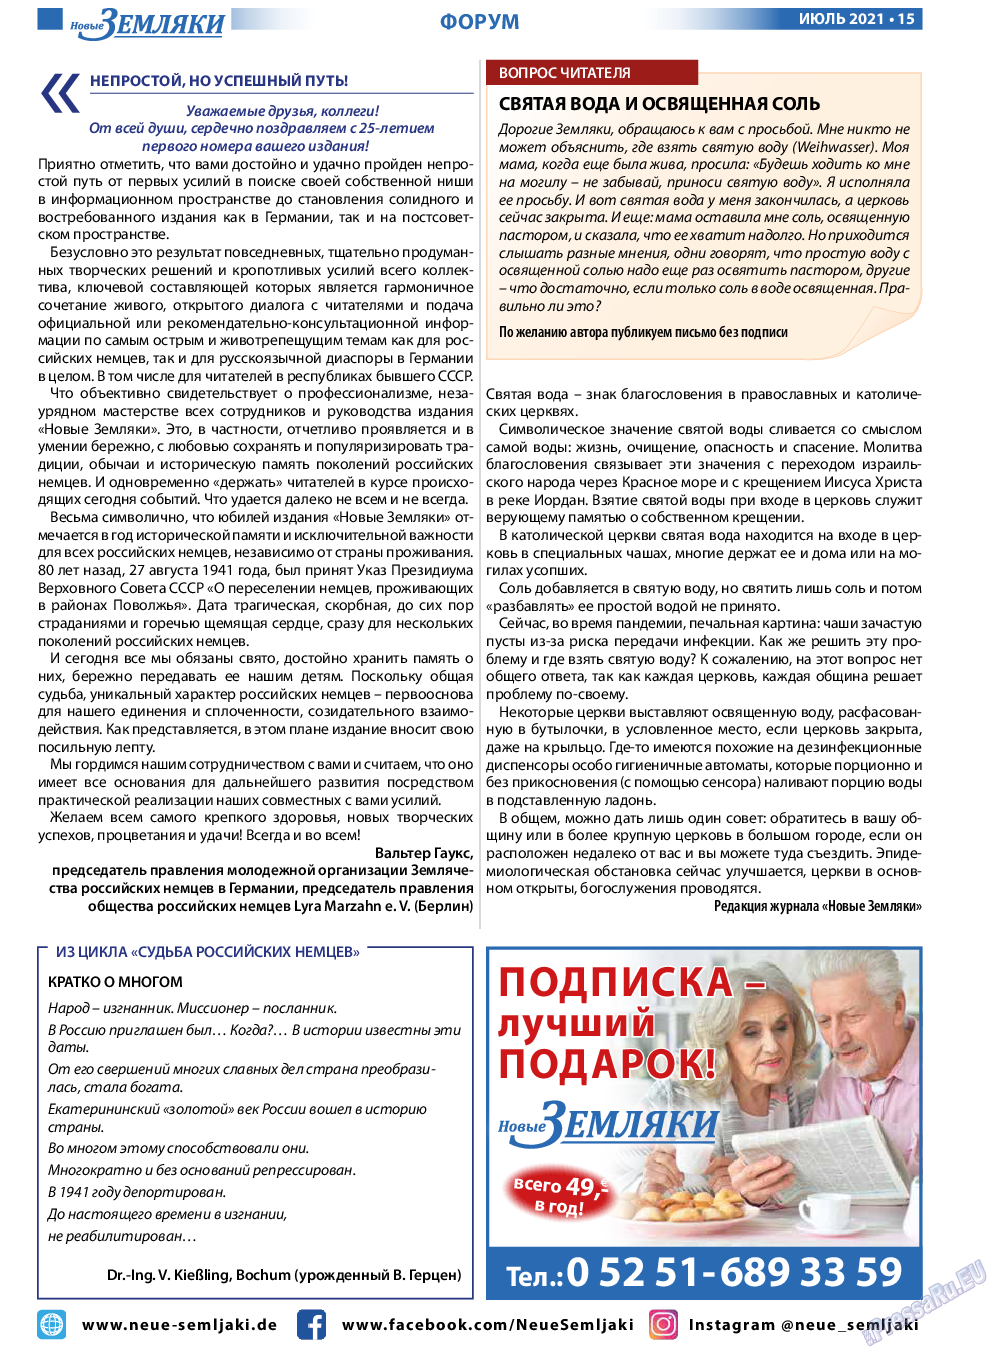 Новые Земляки, газета. 2021 №7 стр.15